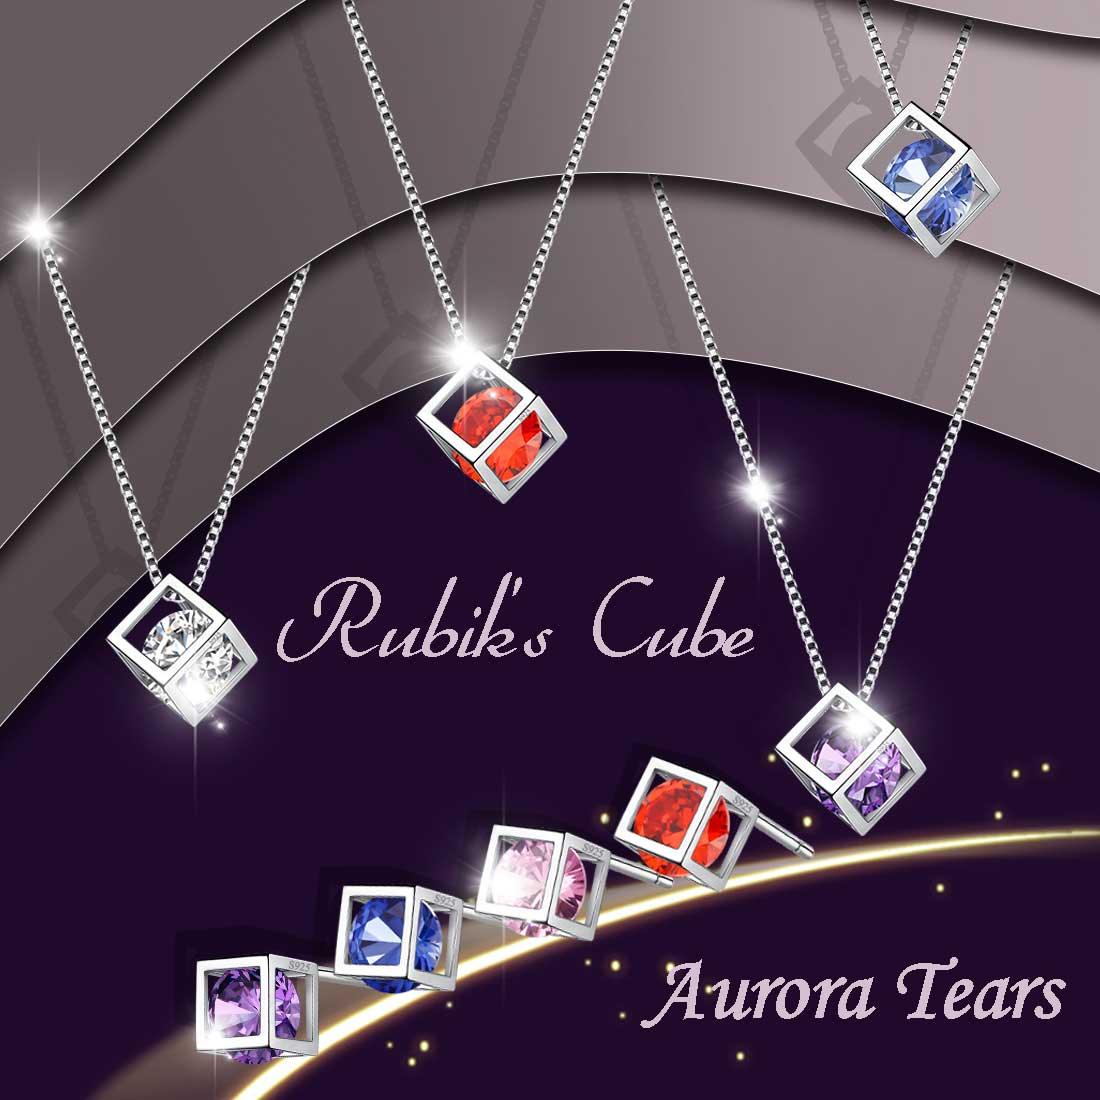 3D Cube Birthstone April Diamond Jewelry Set 3PCS - Jewelry Set - Aurora Tears